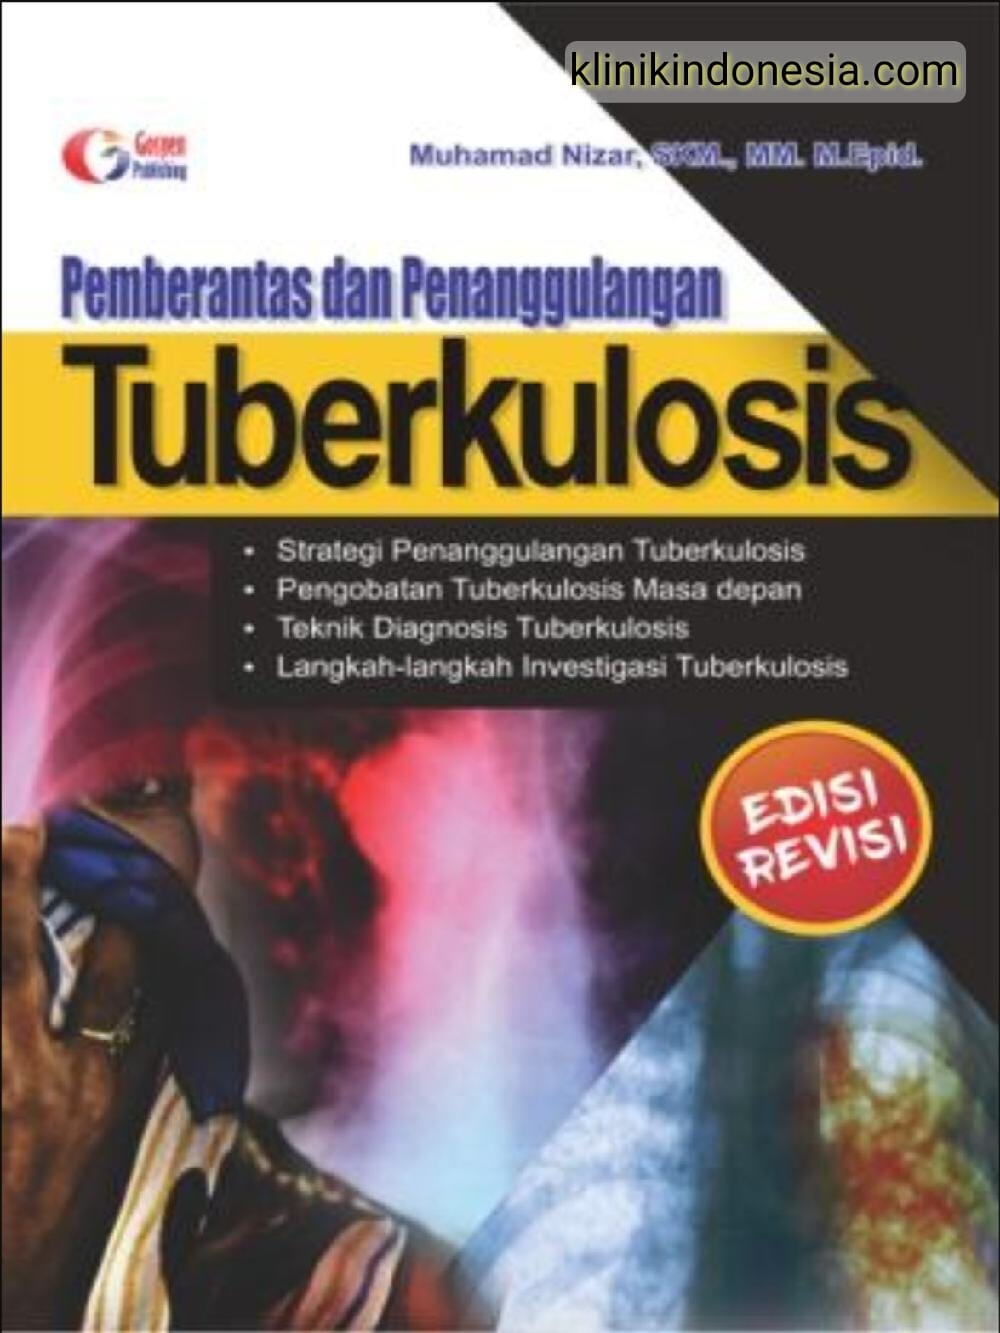 Gambar Pemberantas dan Penanggulangan Tuberkulosis